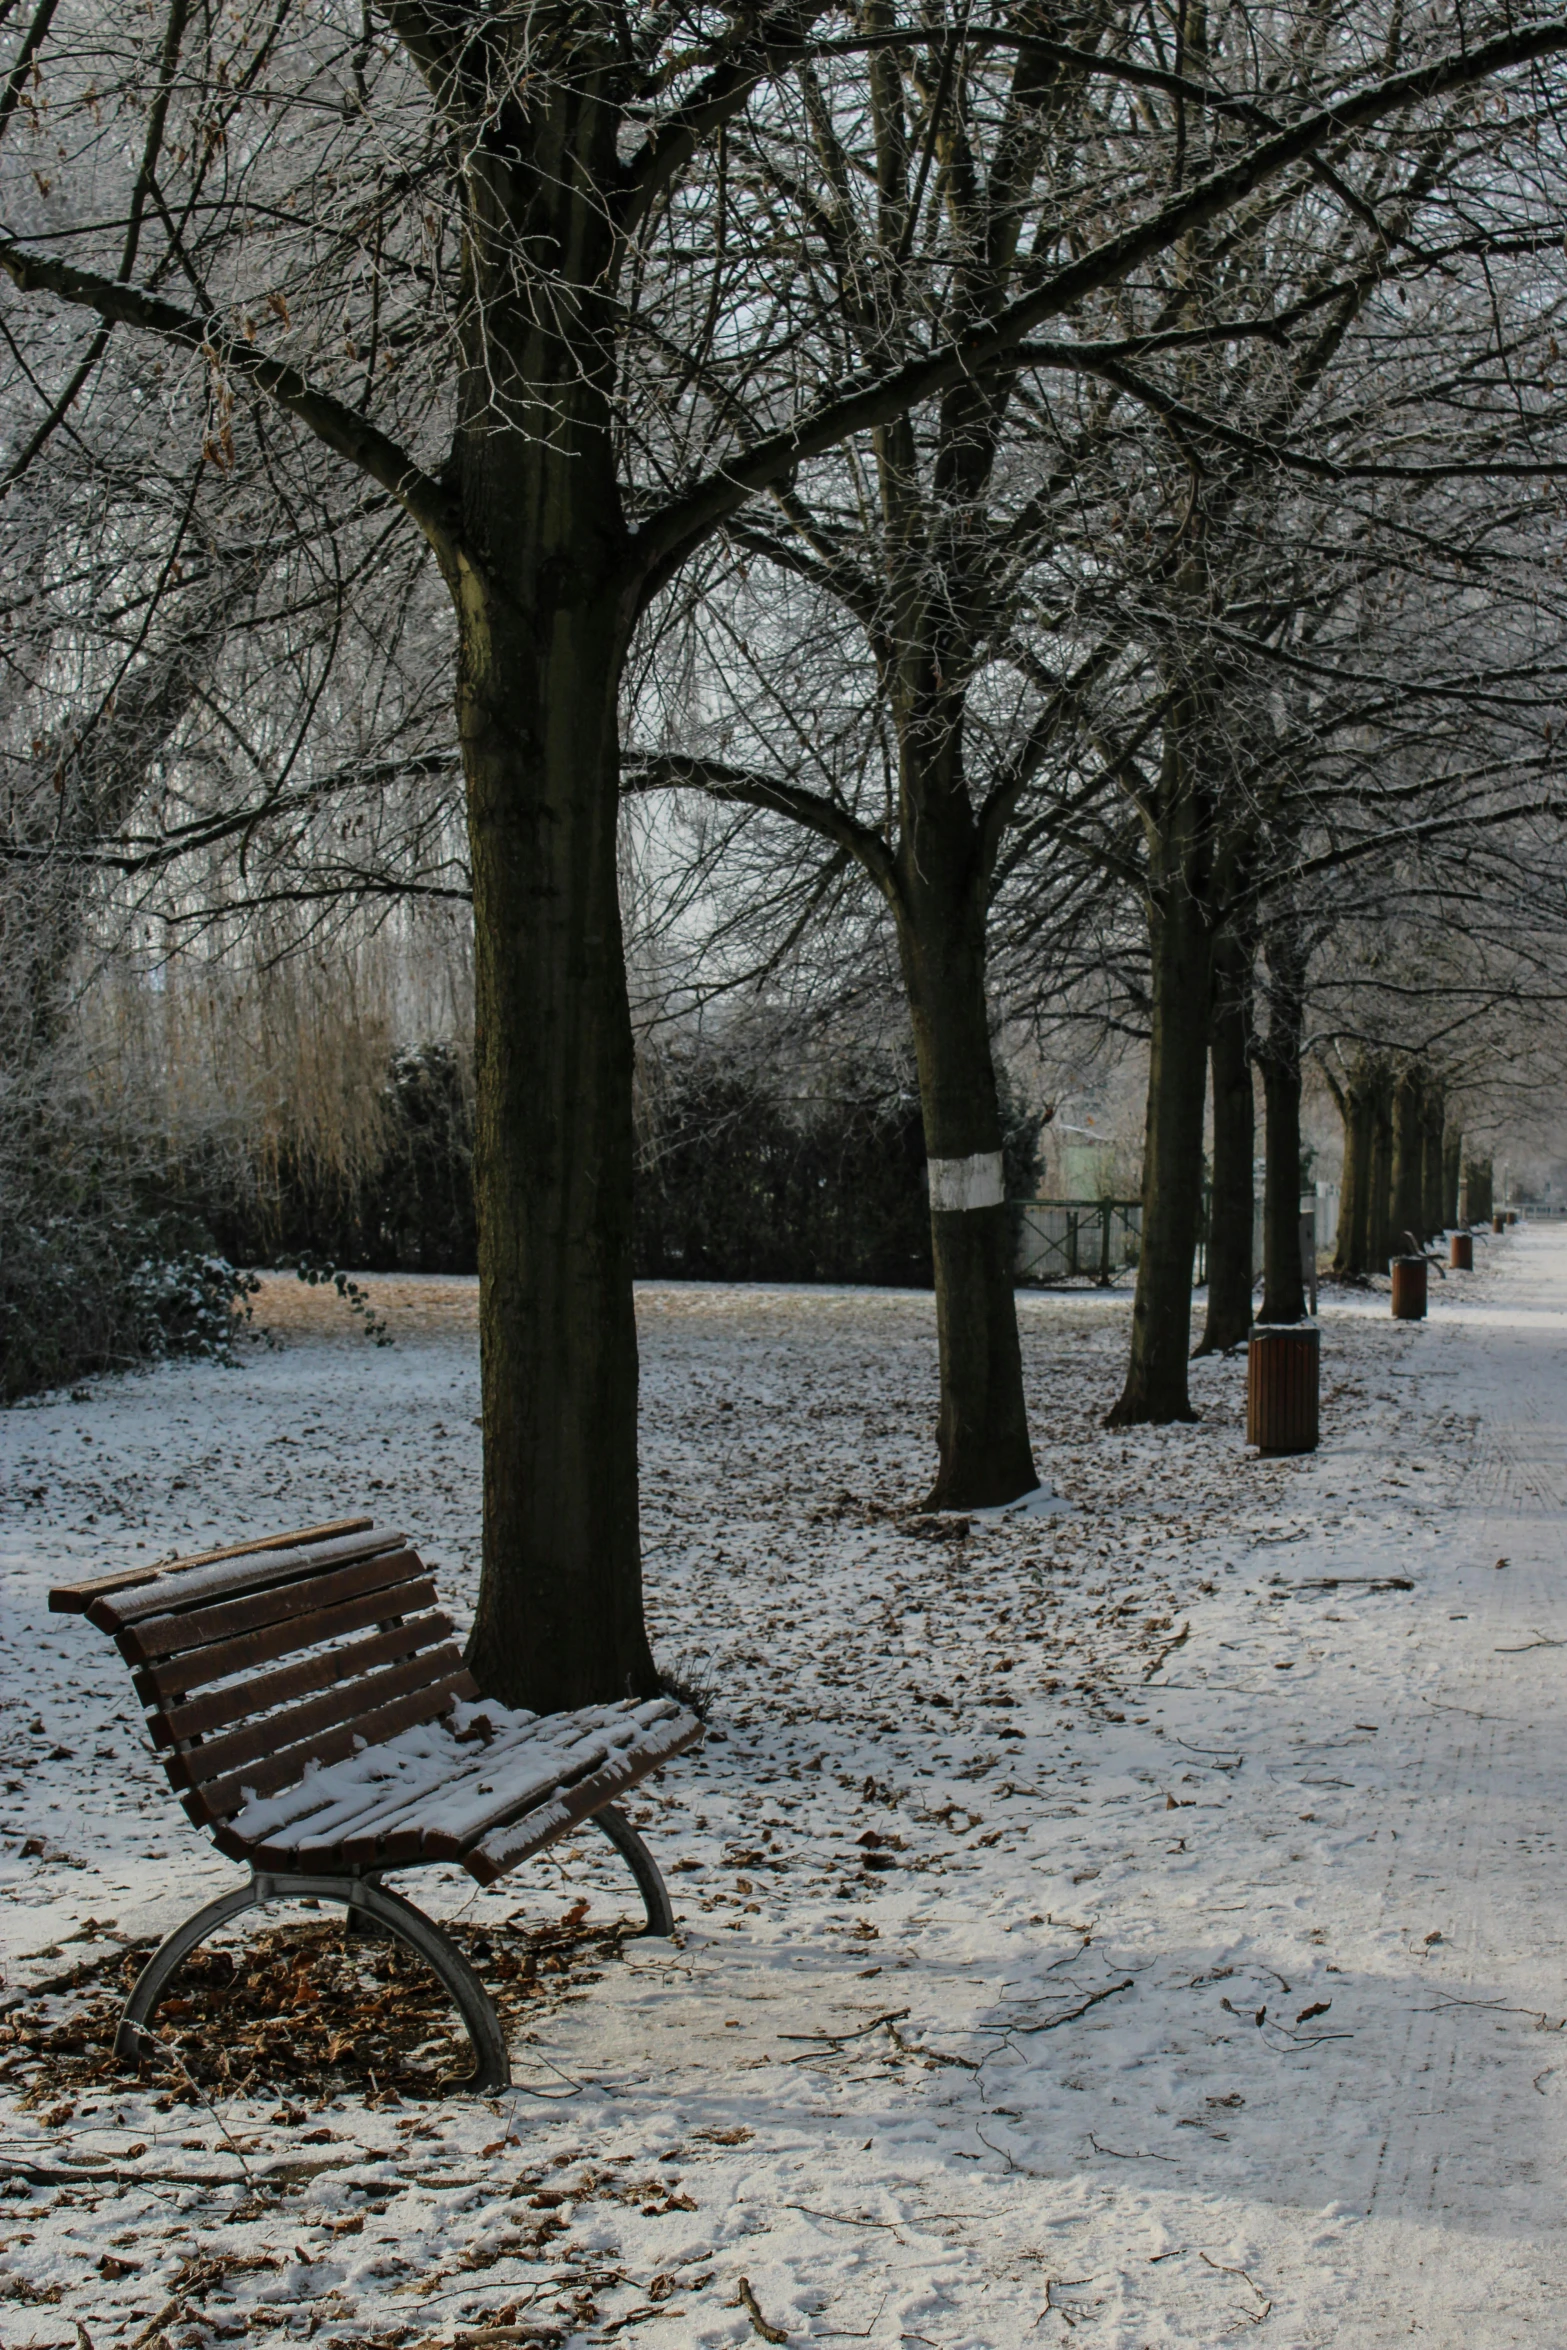 a bench on a snowy sidewalk in a park